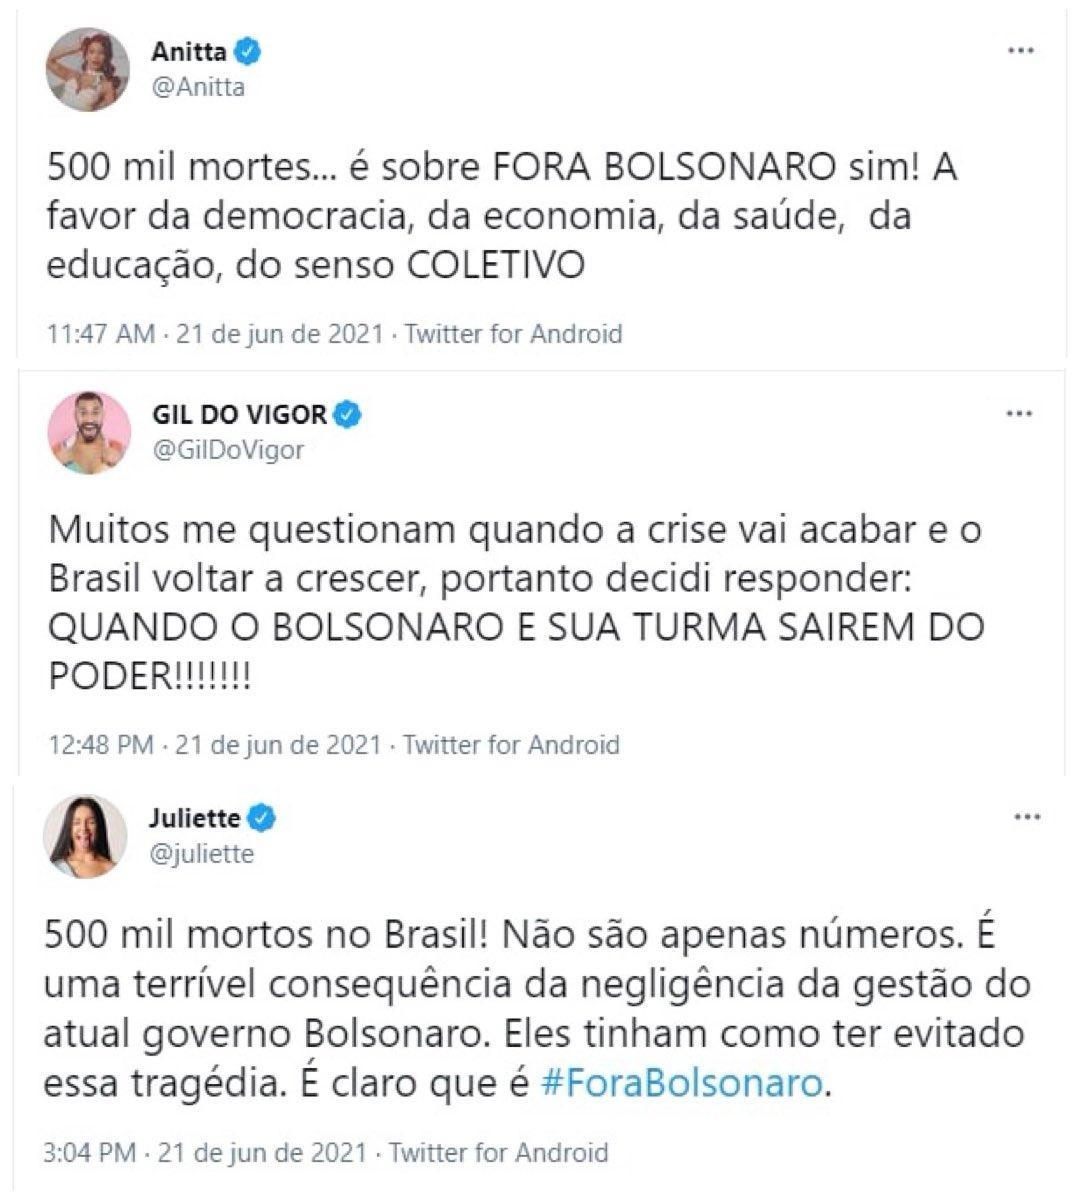 montagem de prints do posicionamento de anitta, gil do vigor e juliette contra bolsonaro e as 500 mil mortes por covid-19 no brasil